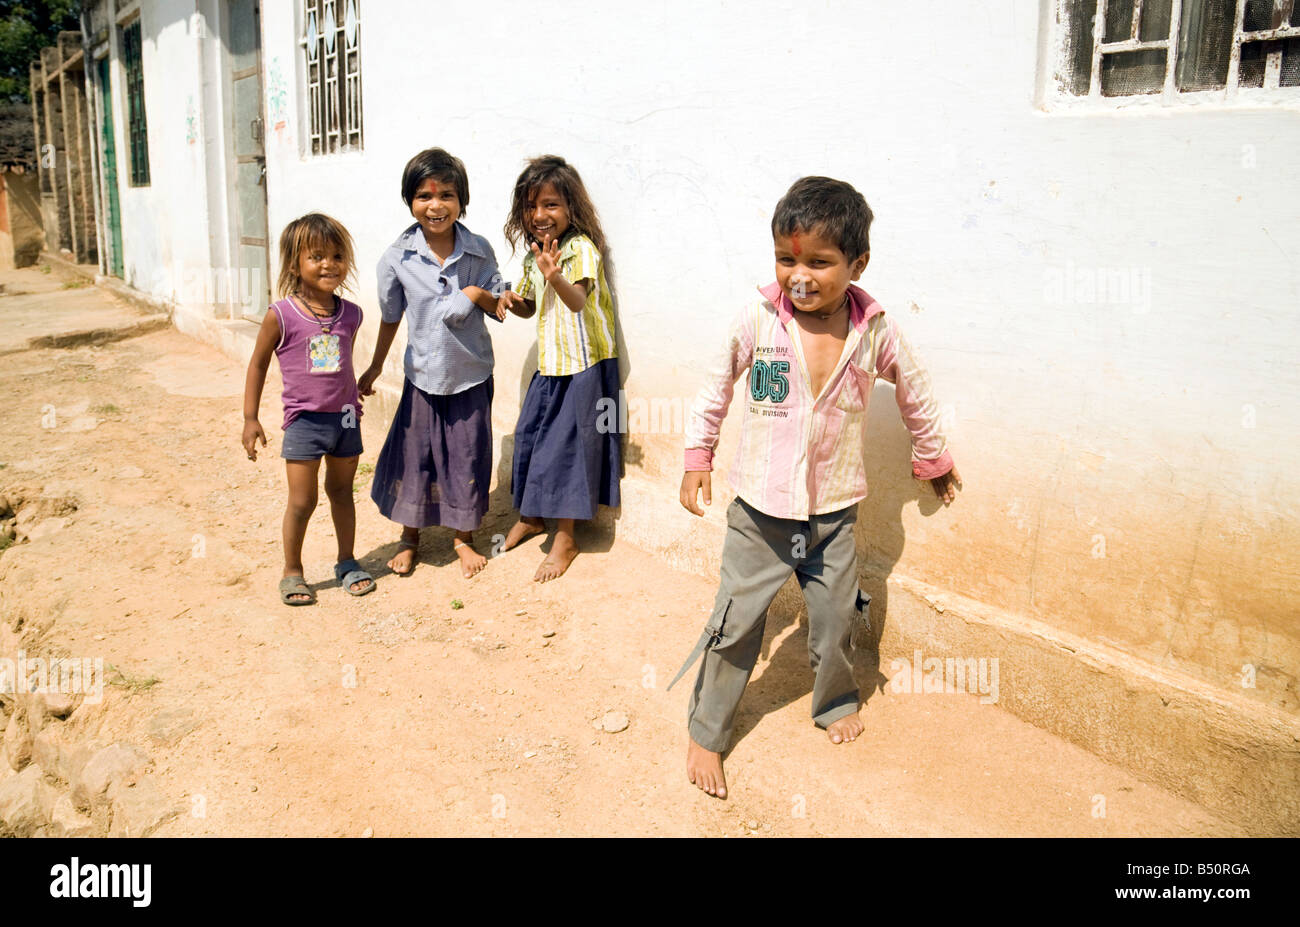 Les enfants de l'Inde - Quatre jeunes enfants du village indien, Rajasthan, Inde, Asie Banque D'Images